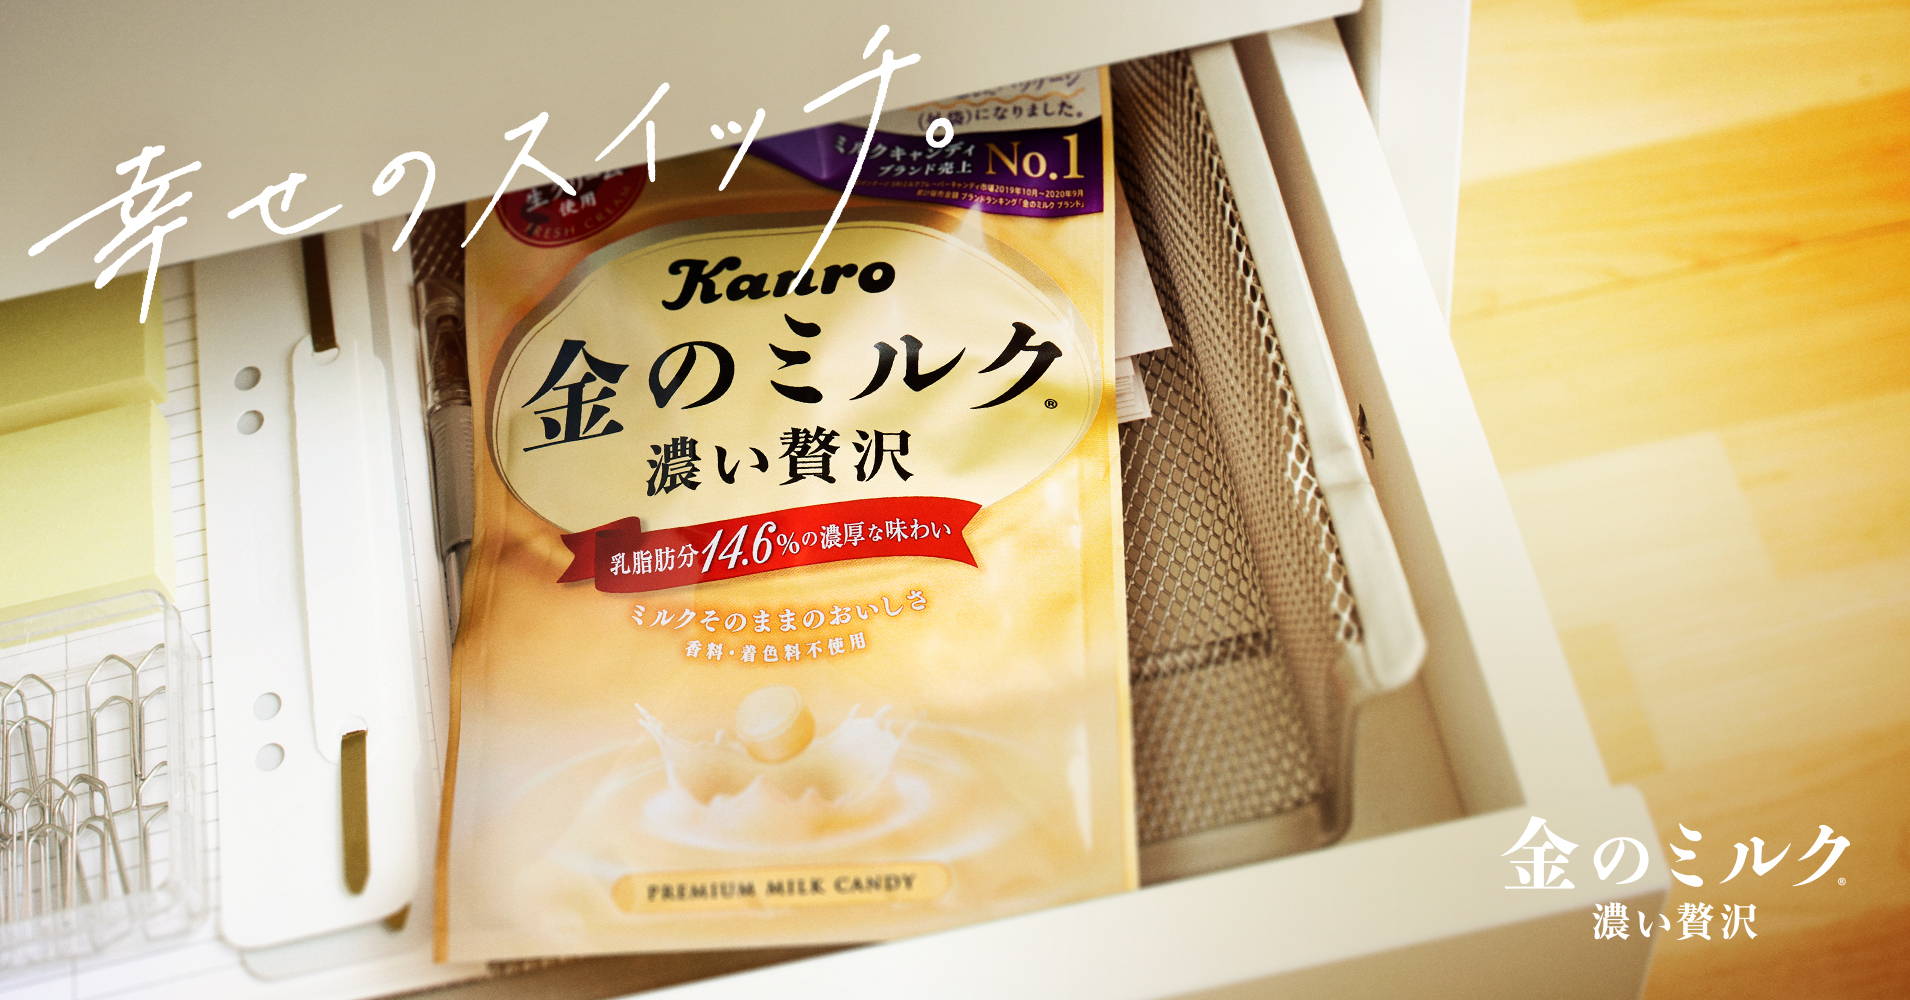 金のミルクキャンディ 抹茶 Kanro Pocket